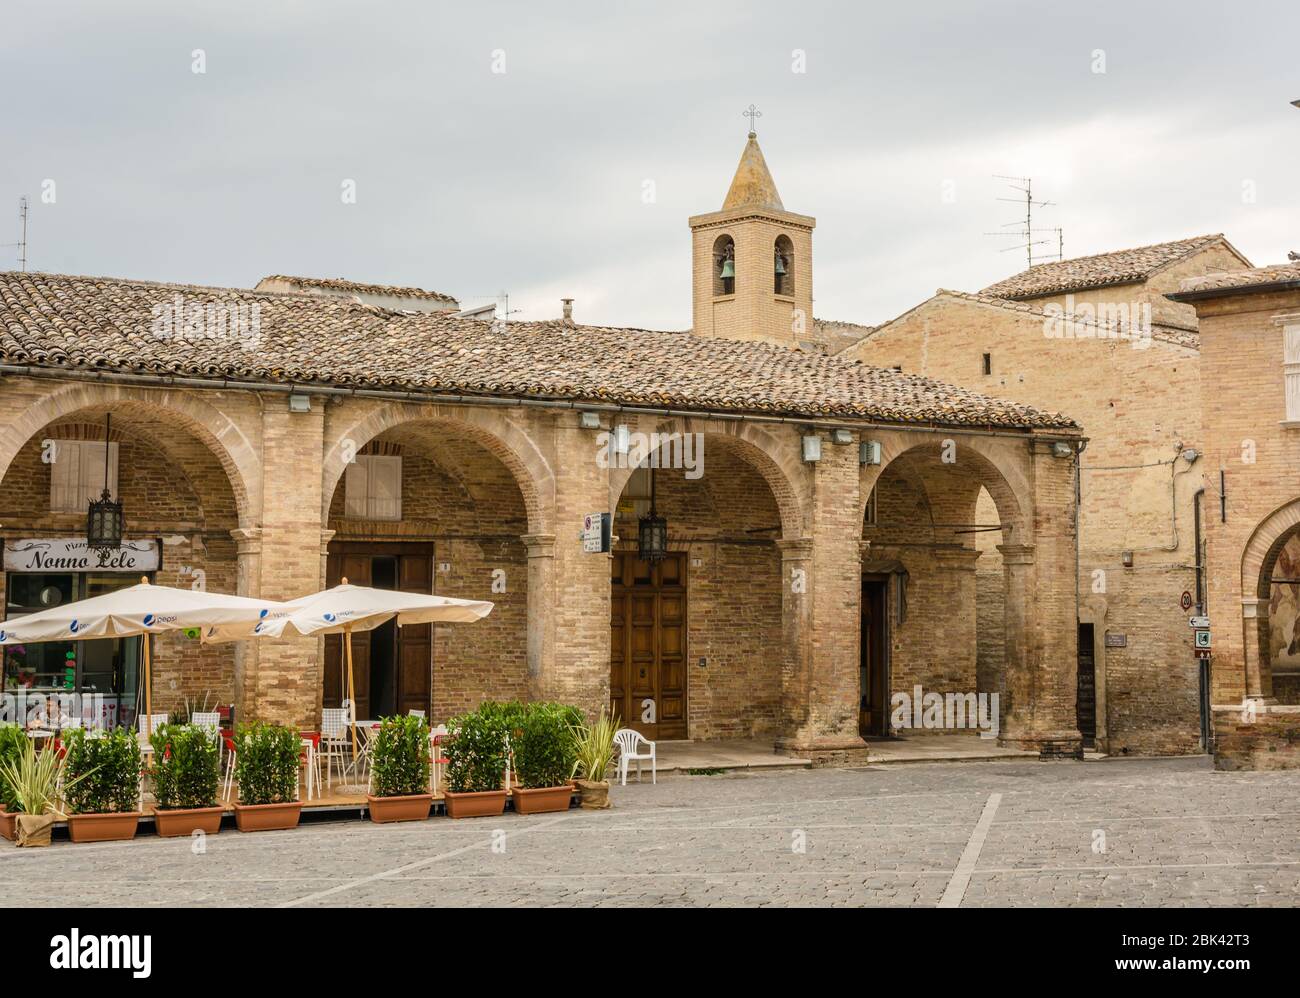 Offida, antico borgo medievale della provincia di Ascoli Piceno, Regione Marche - Italia - piazza della gente Foto Stock